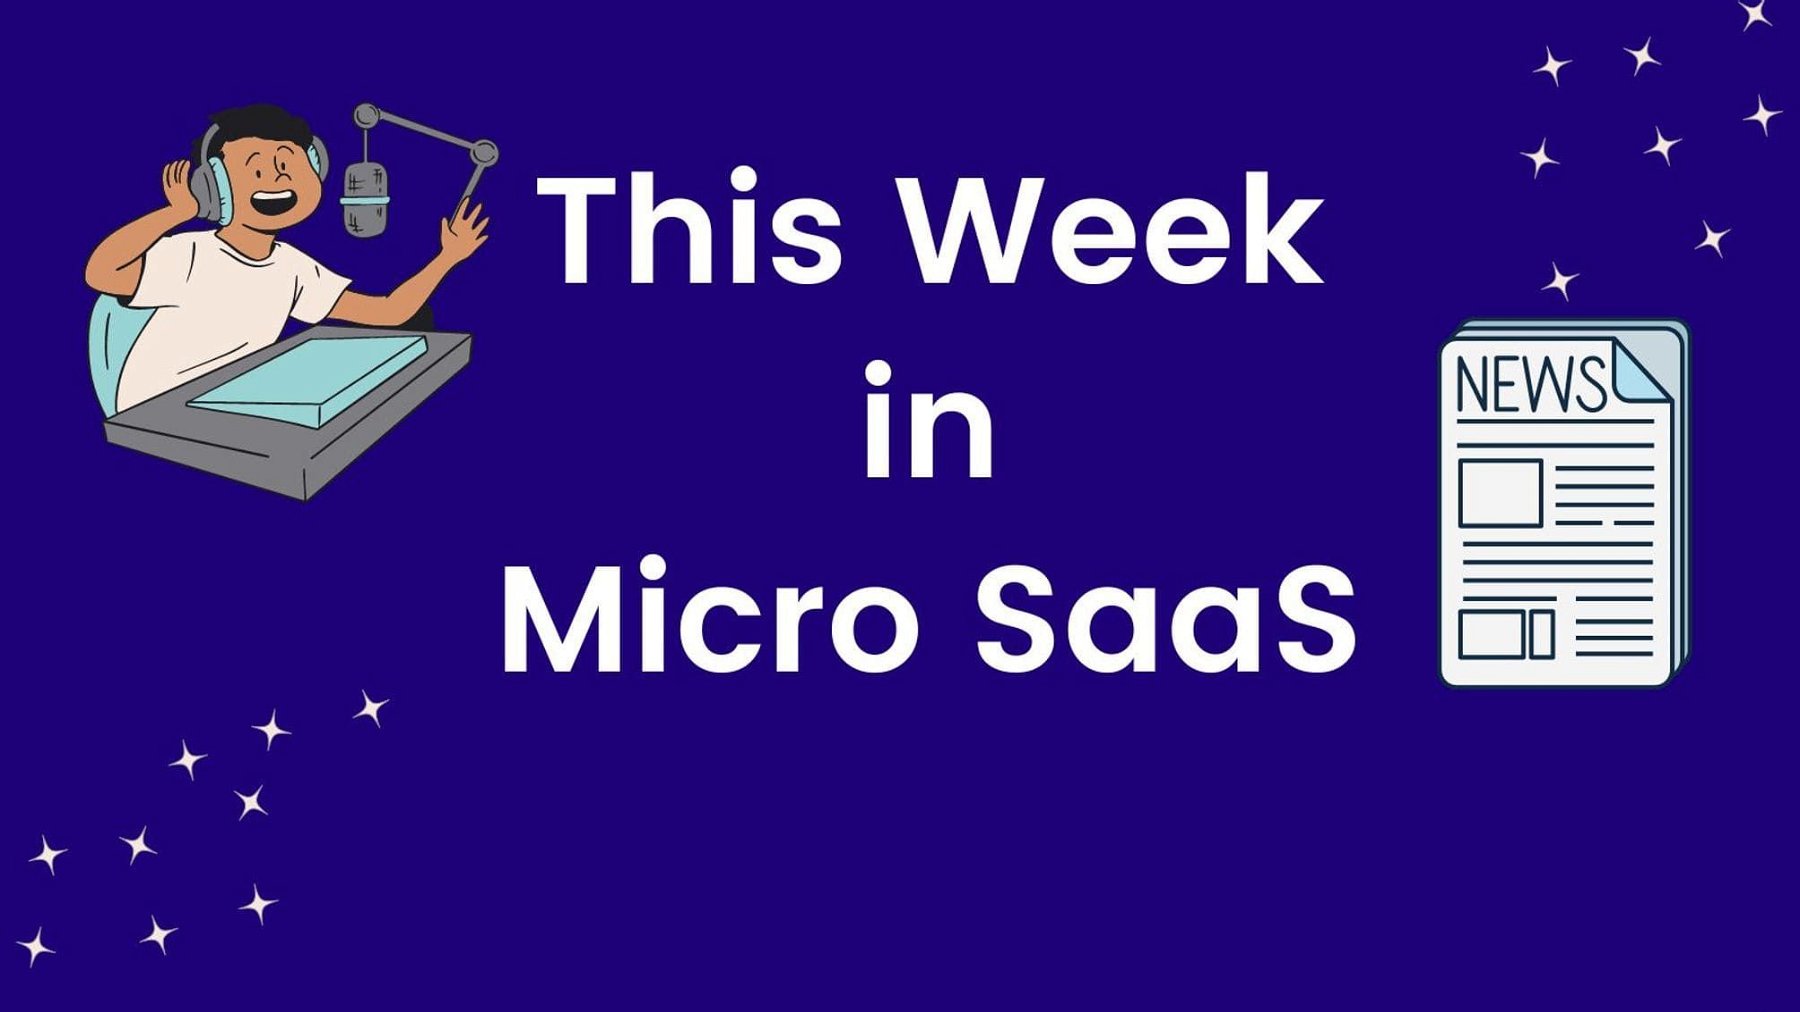 This week in Micro SaaS - $1035 MRR for GDPR Micro SaaS Tool